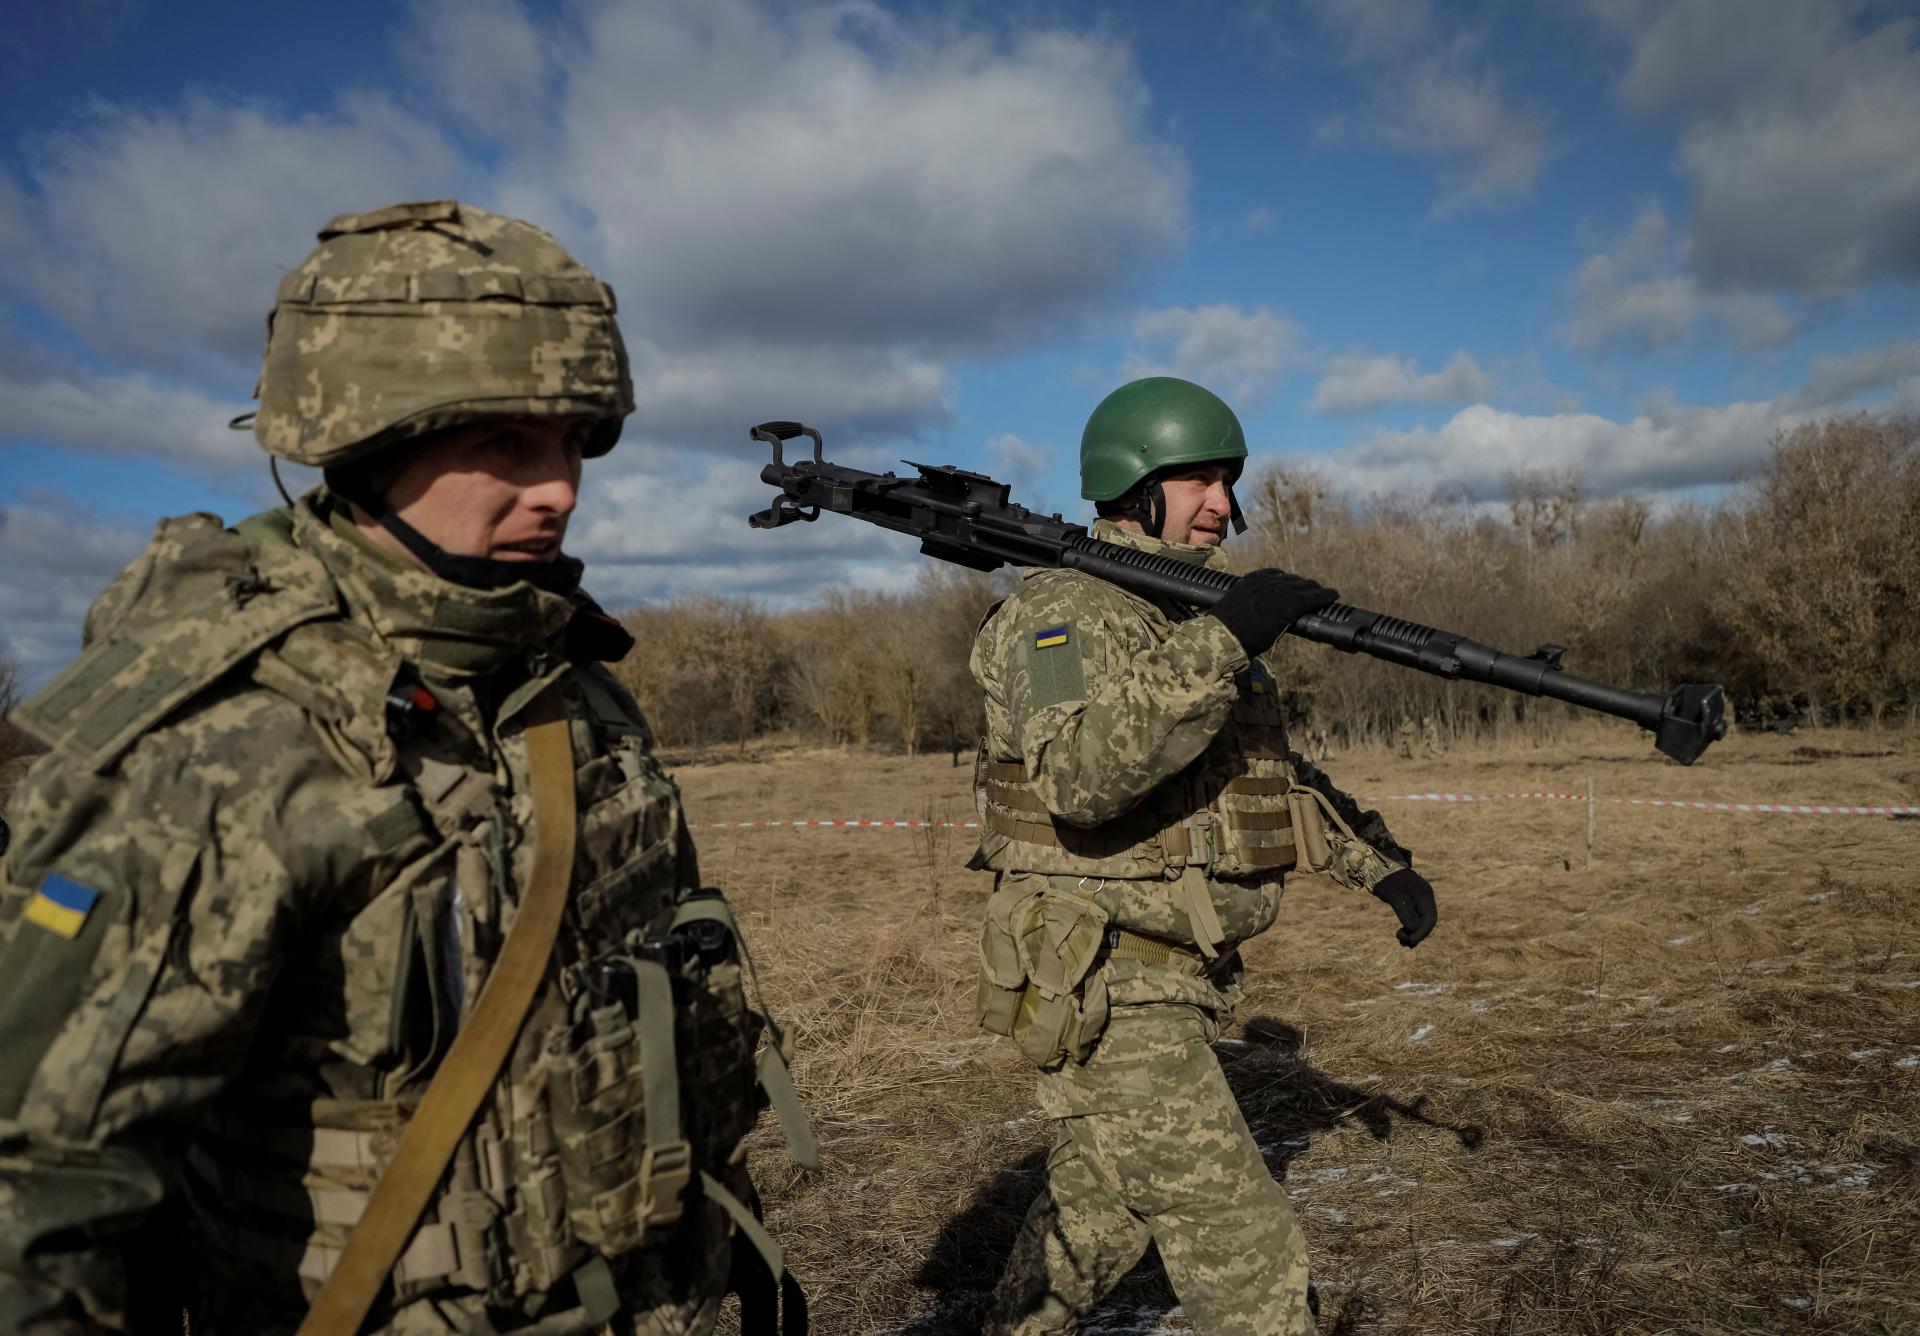 Konflikt na Ukrajine sa vymyká spod kontroly, sme znepokojení, varuje čínsky minister